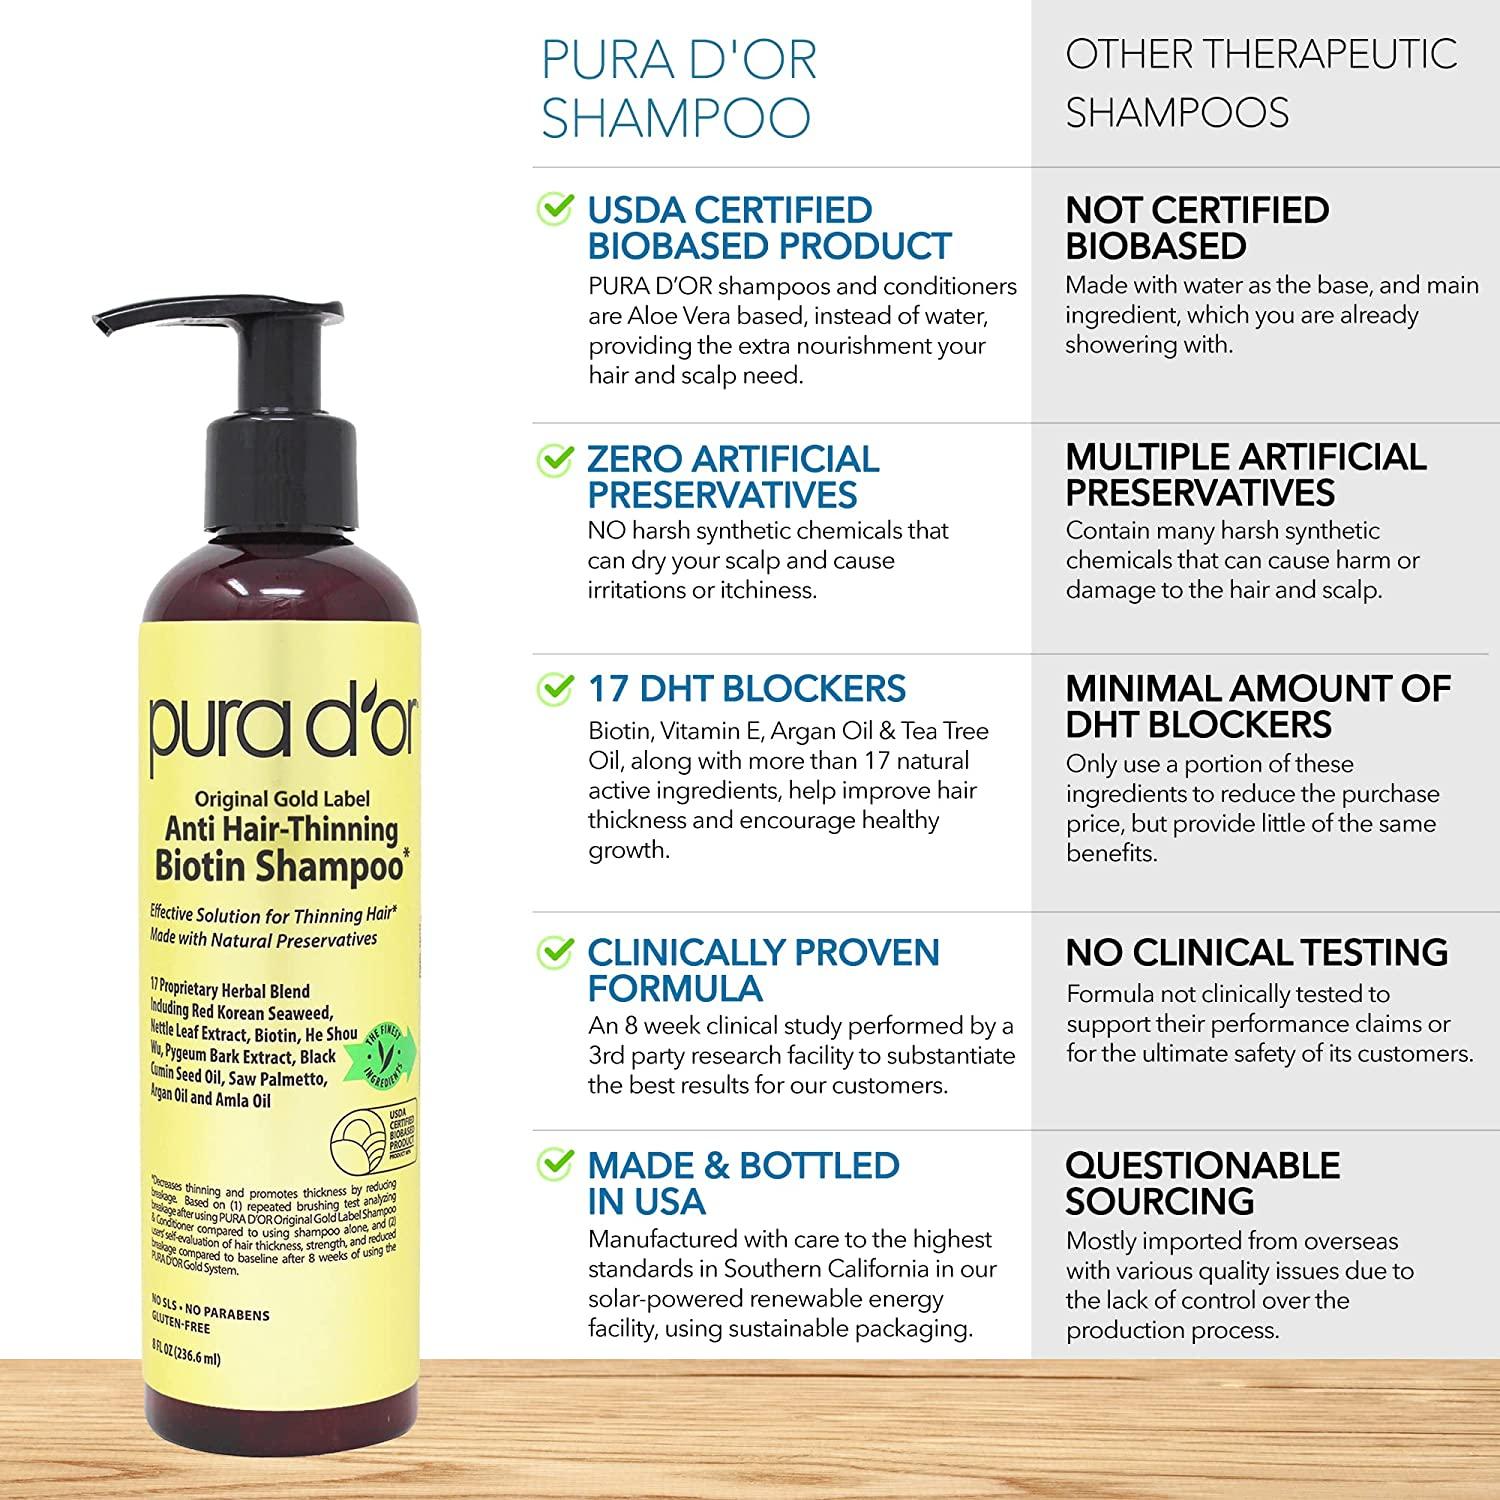 Pura d'or | Purador| Advanced Therapy Anti-Hair Thinning Shampoo &  Conditioner Hair Set. 24 fl. Oz. each.